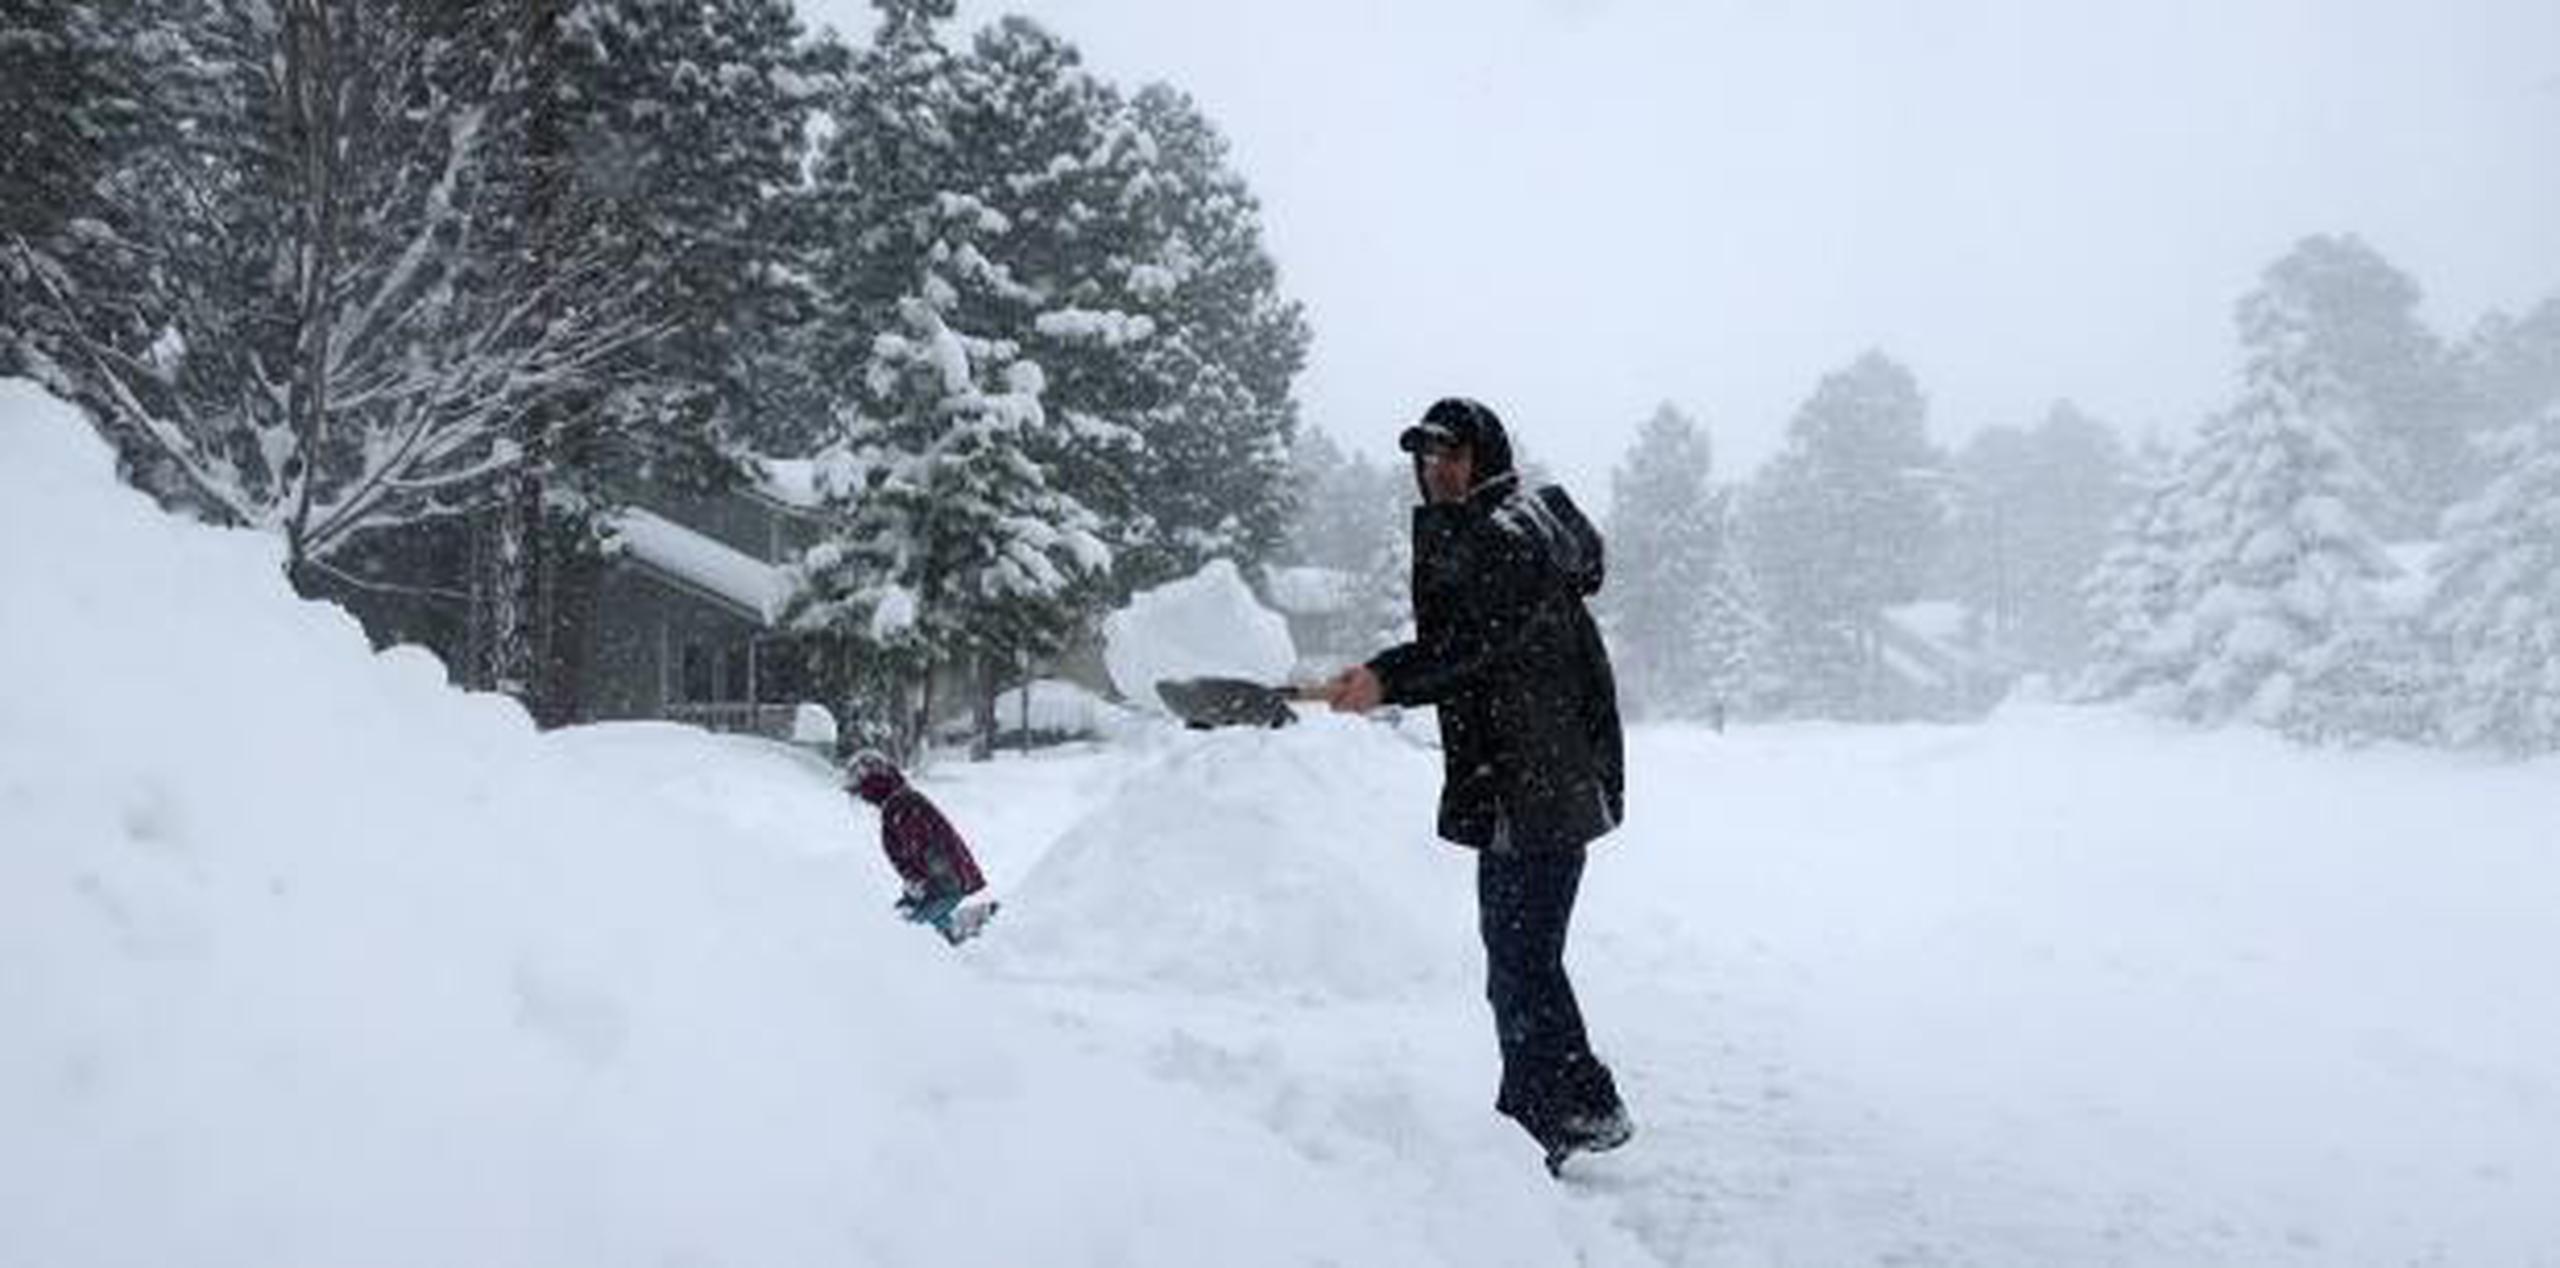 Morgan Baggs sacaba la nieve del frente de su casa mientras nevaba ayer, jueves, en Flagstaff, Arizona. (AP / Felicia Fonseca)